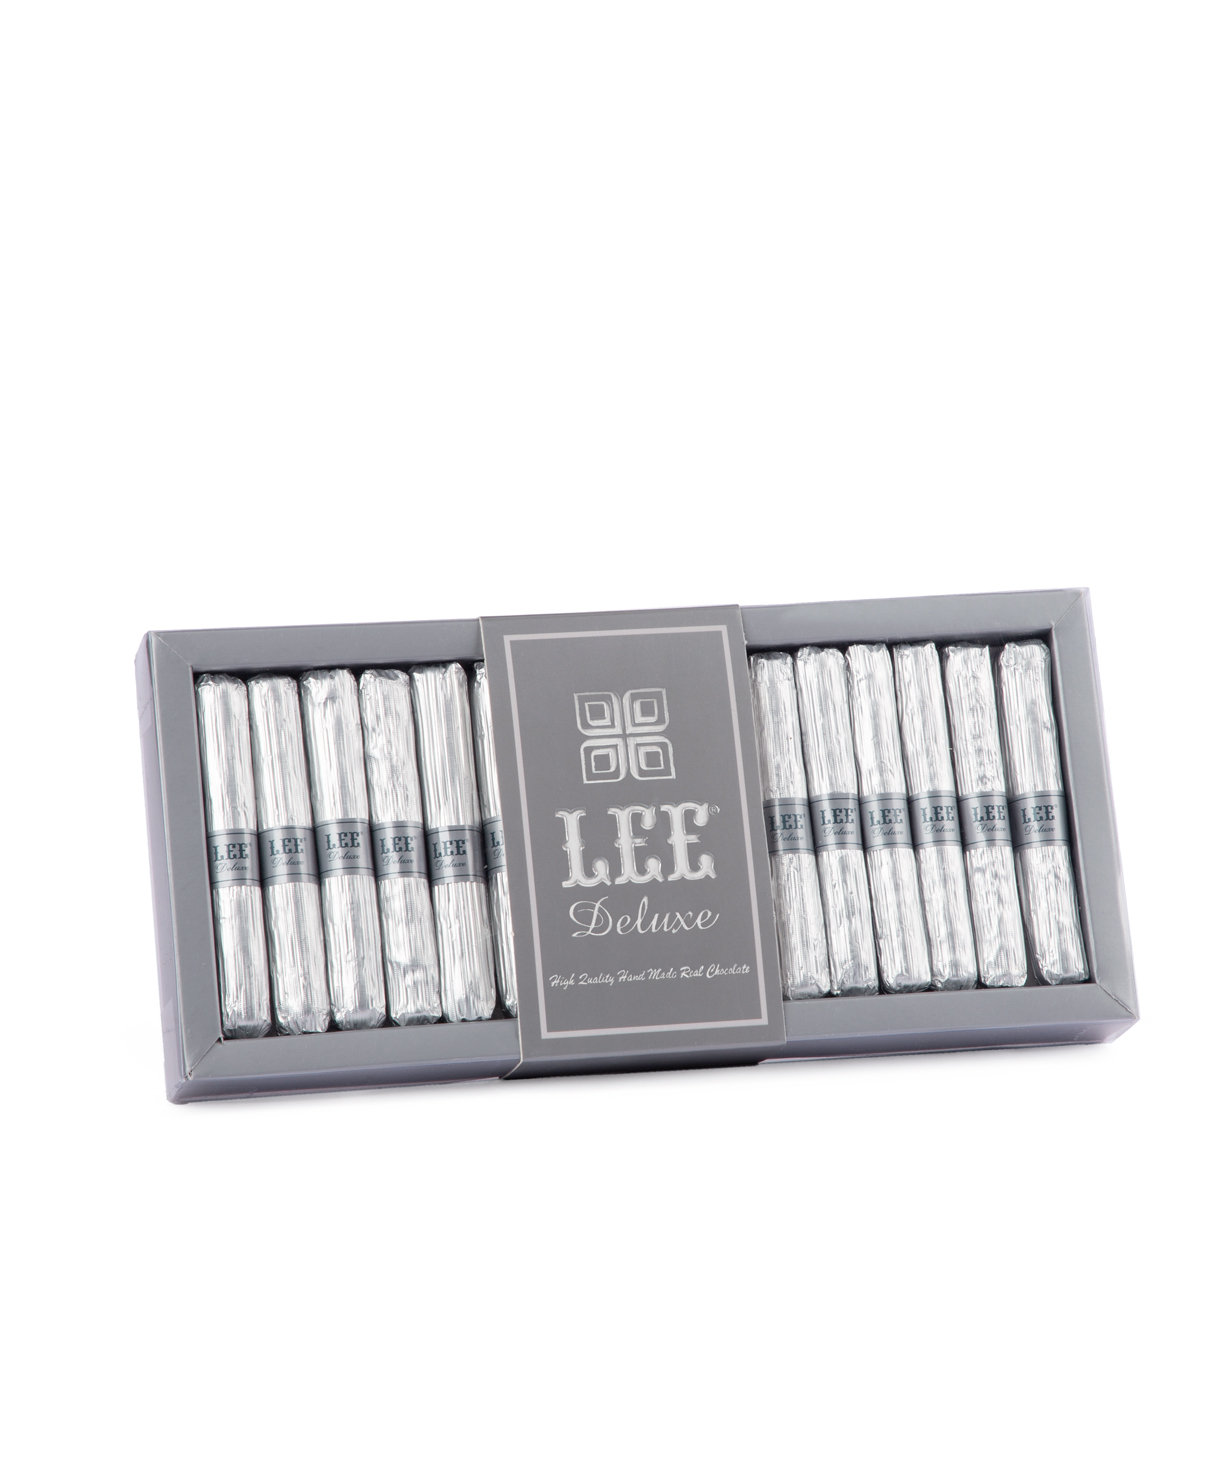 Коллекция `Lee Deluxe` шоколадных конфет, серебряные 215 гр